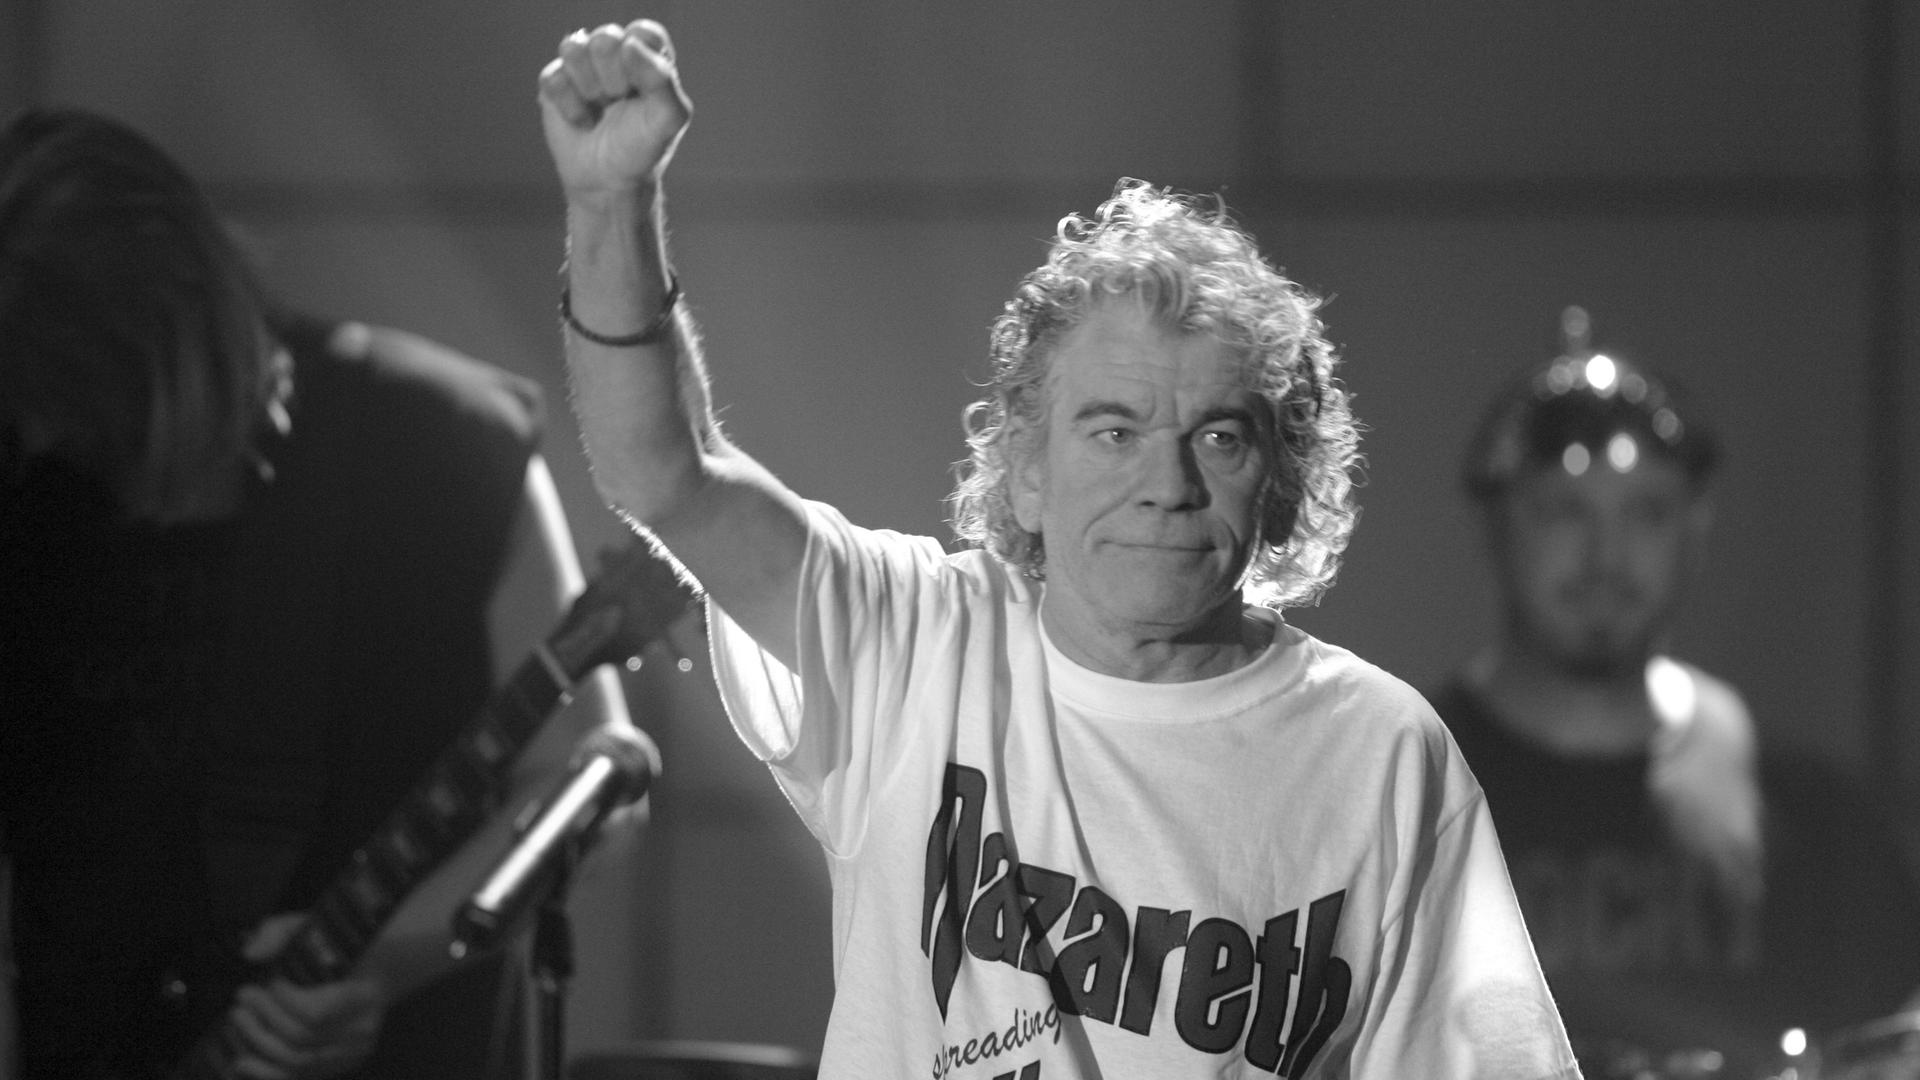 Auf dem schwarz-weiß-Bild steht McCafferty mit einem hellen Nazareth-Shirt auf der Bühne und reckt den rechten Arm hoch. Er lächelt leicht. Dahinter zwei weitere Personen.